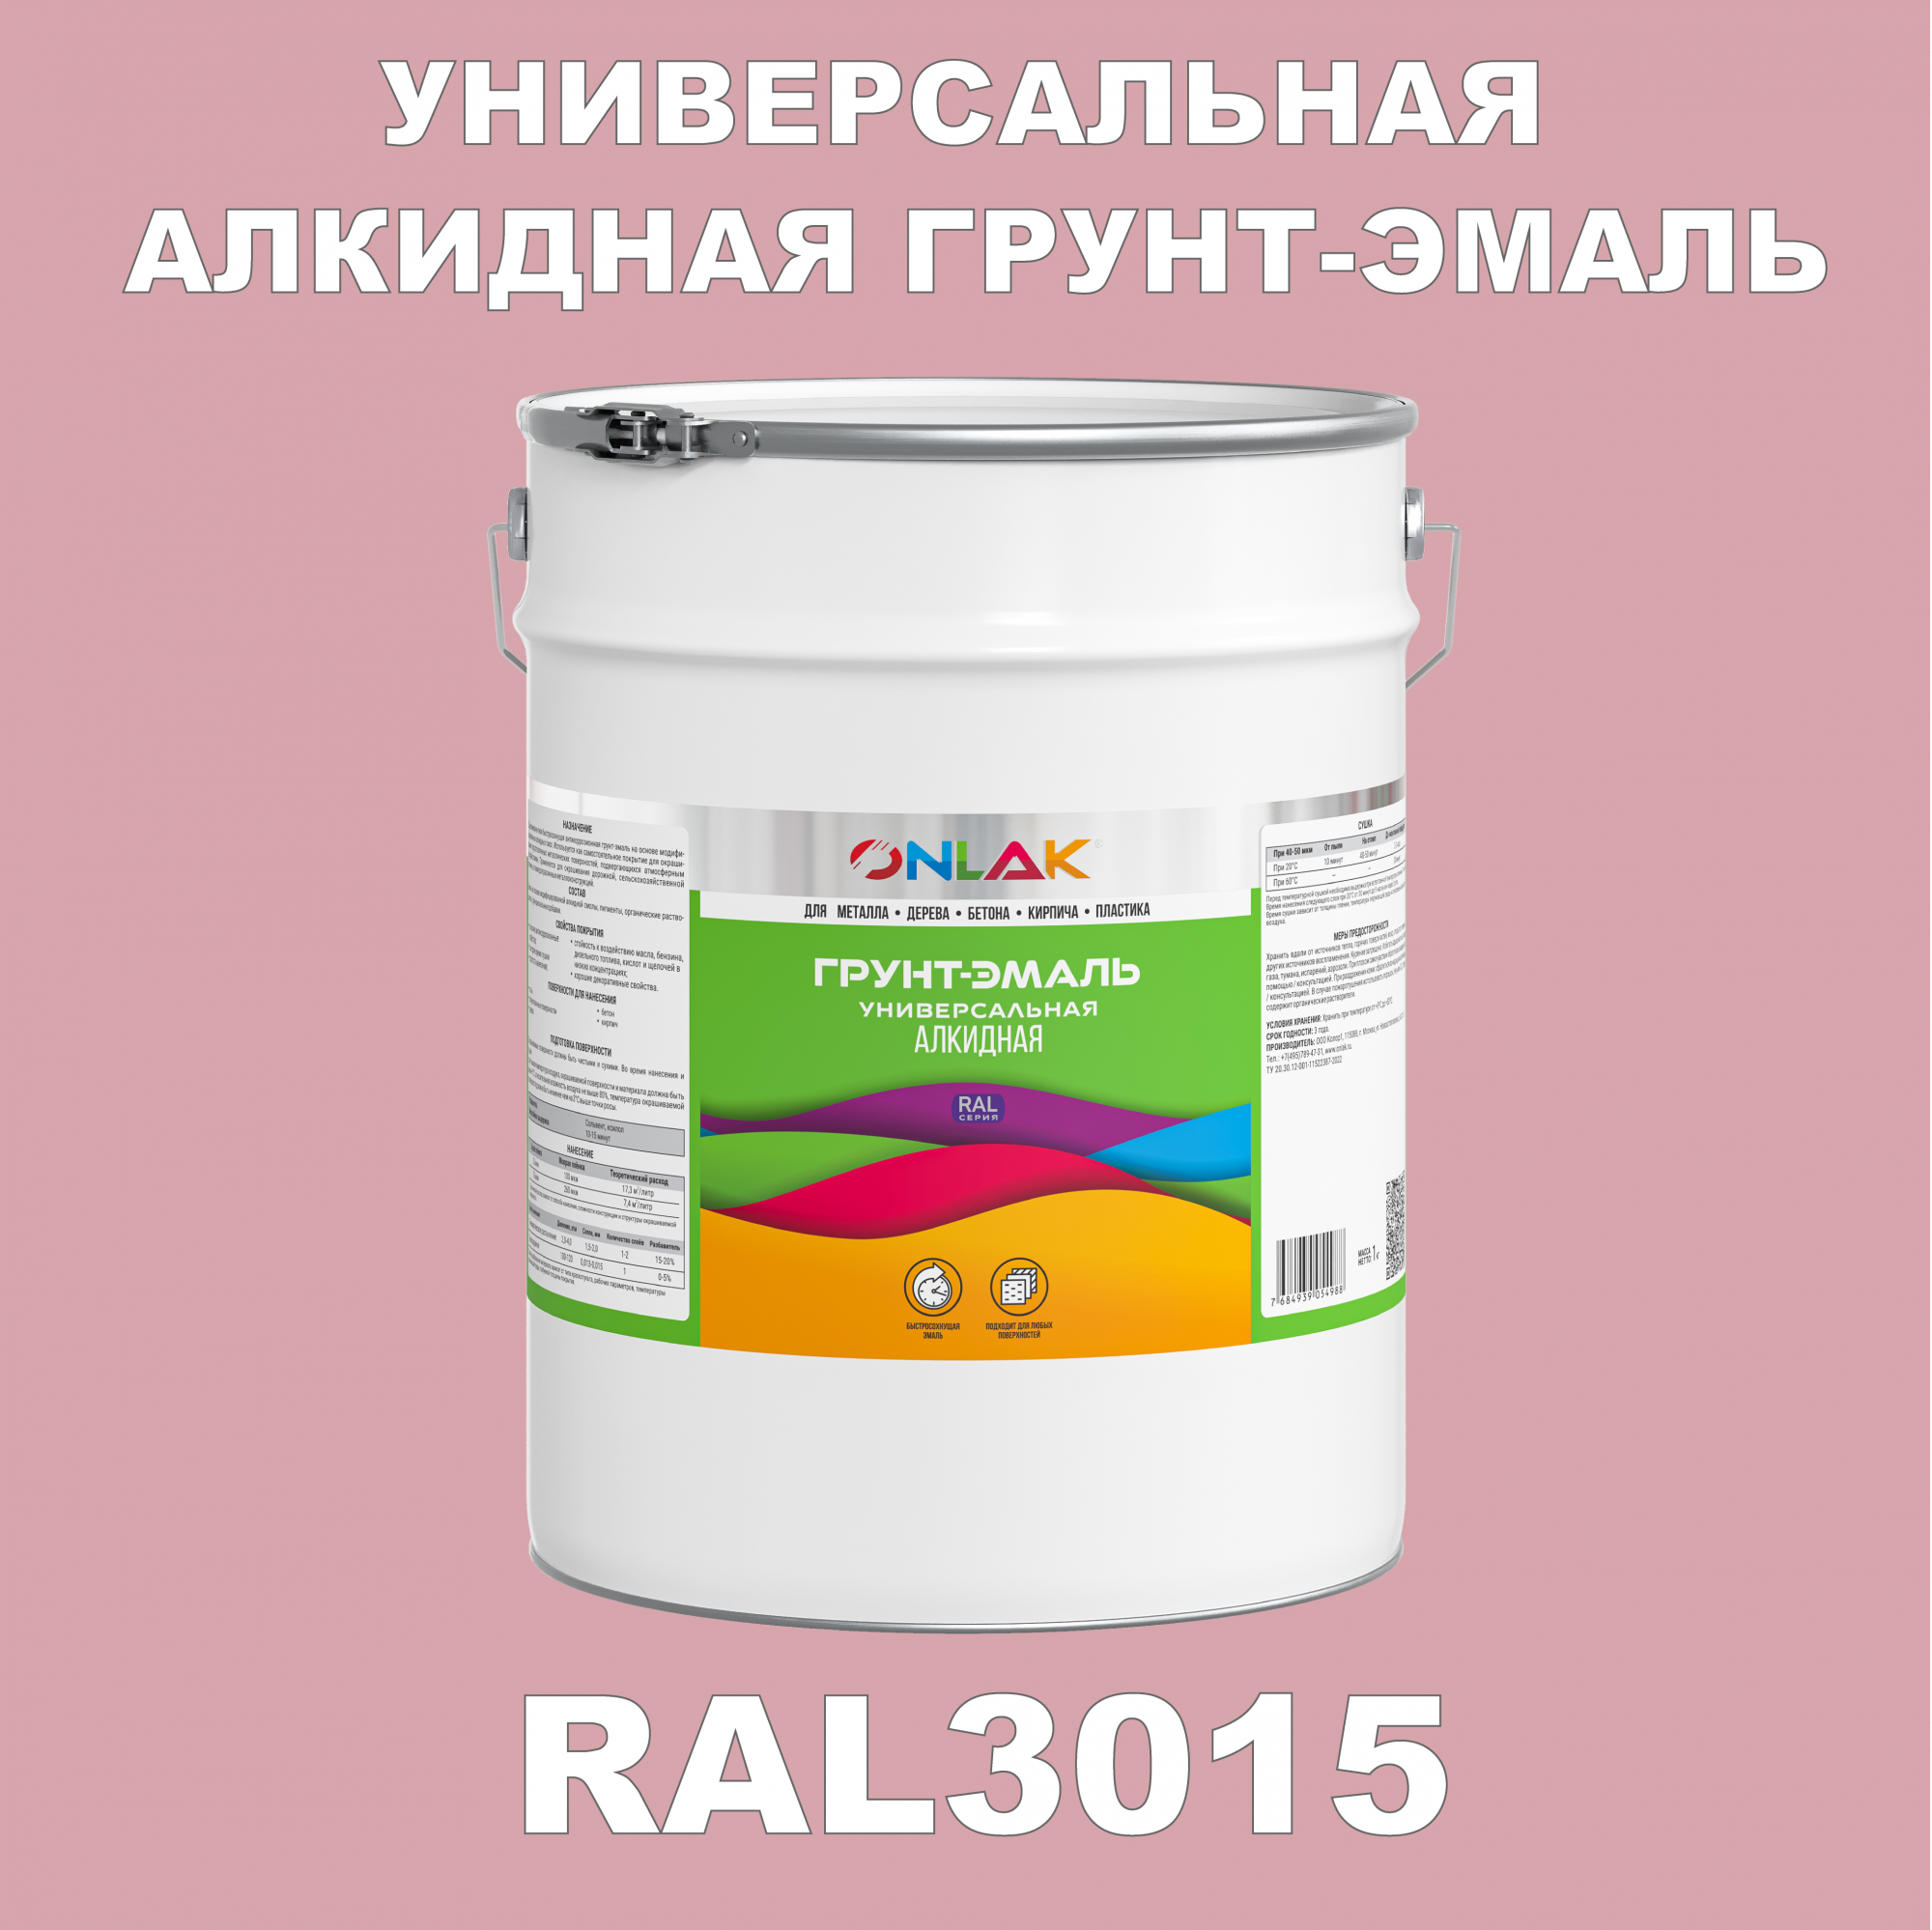 Грунт-эмаль ONLAK 1К RAL3015 антикоррозионная алкидная по металлу по ржавчине 20 кг грунт для масла mighty oak